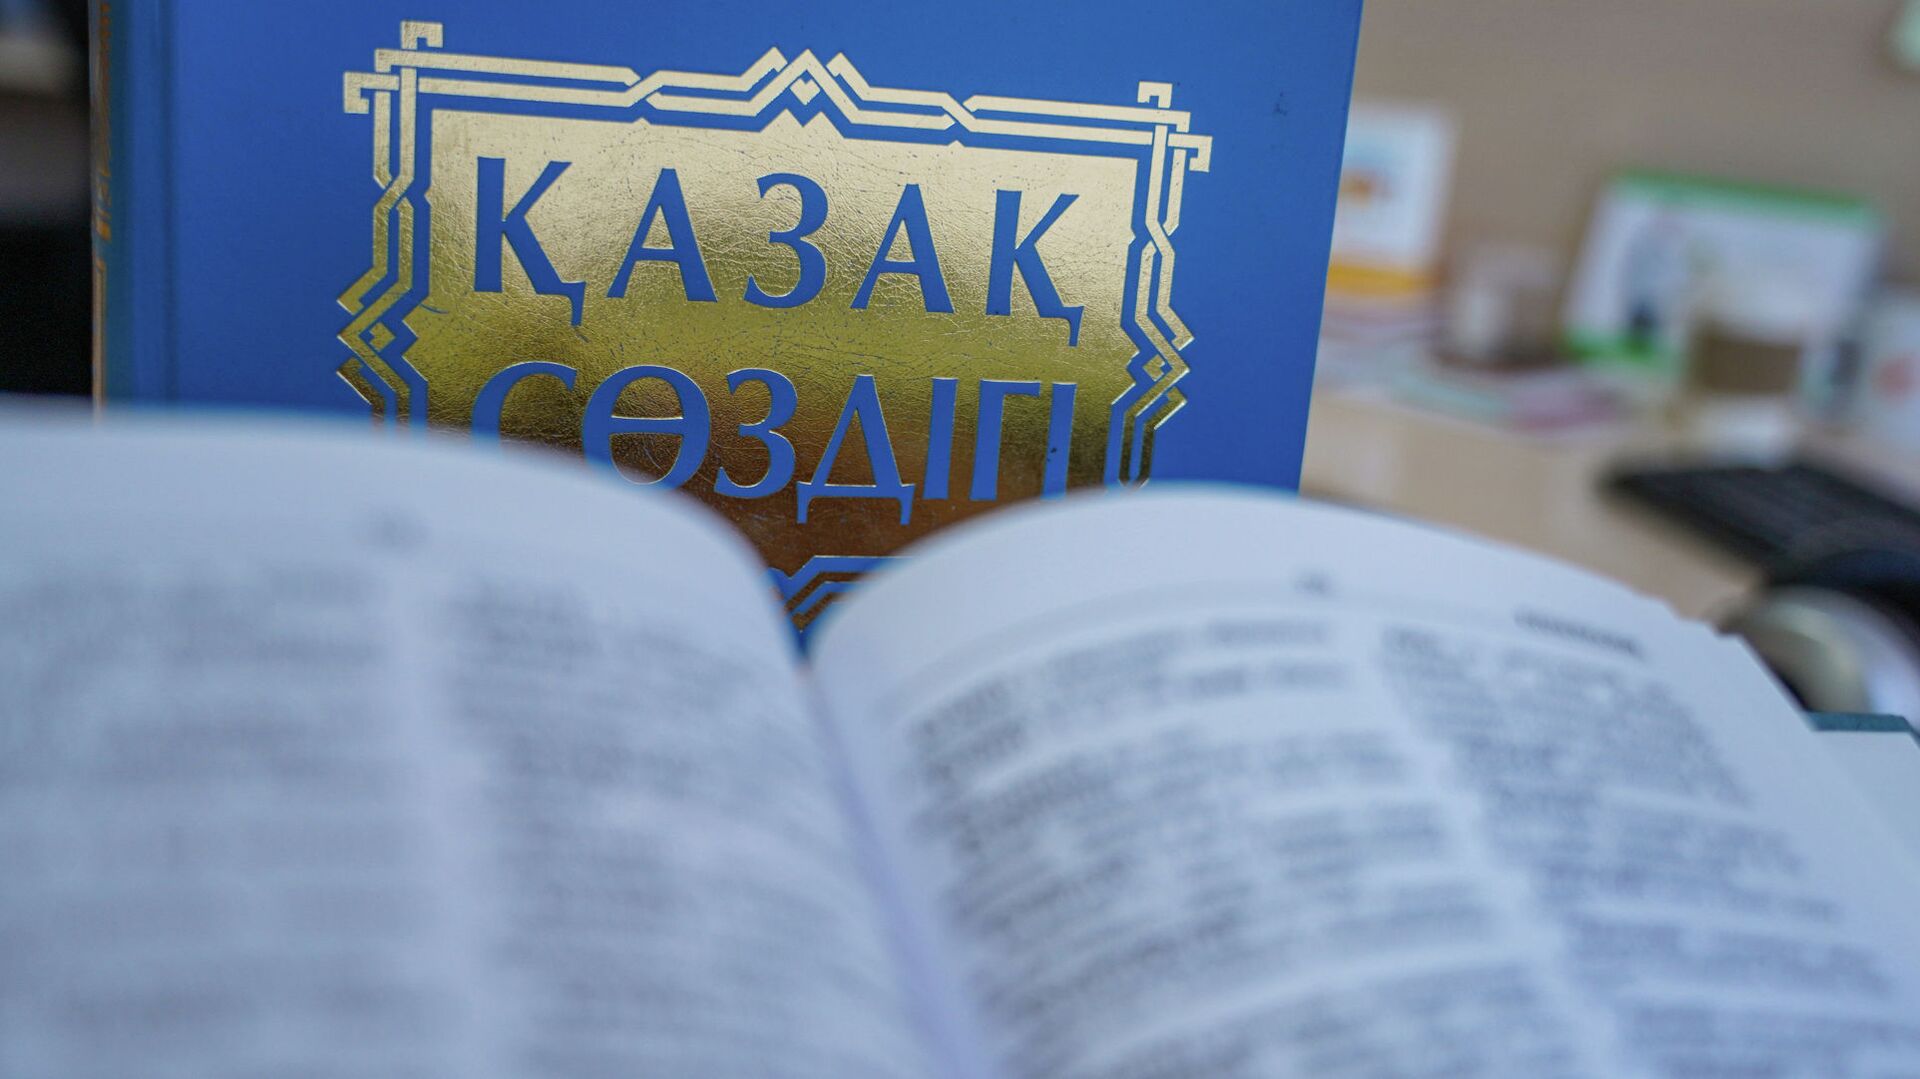 Бесплатные курсы казахского языка открыли в Мамлютском районе СКО